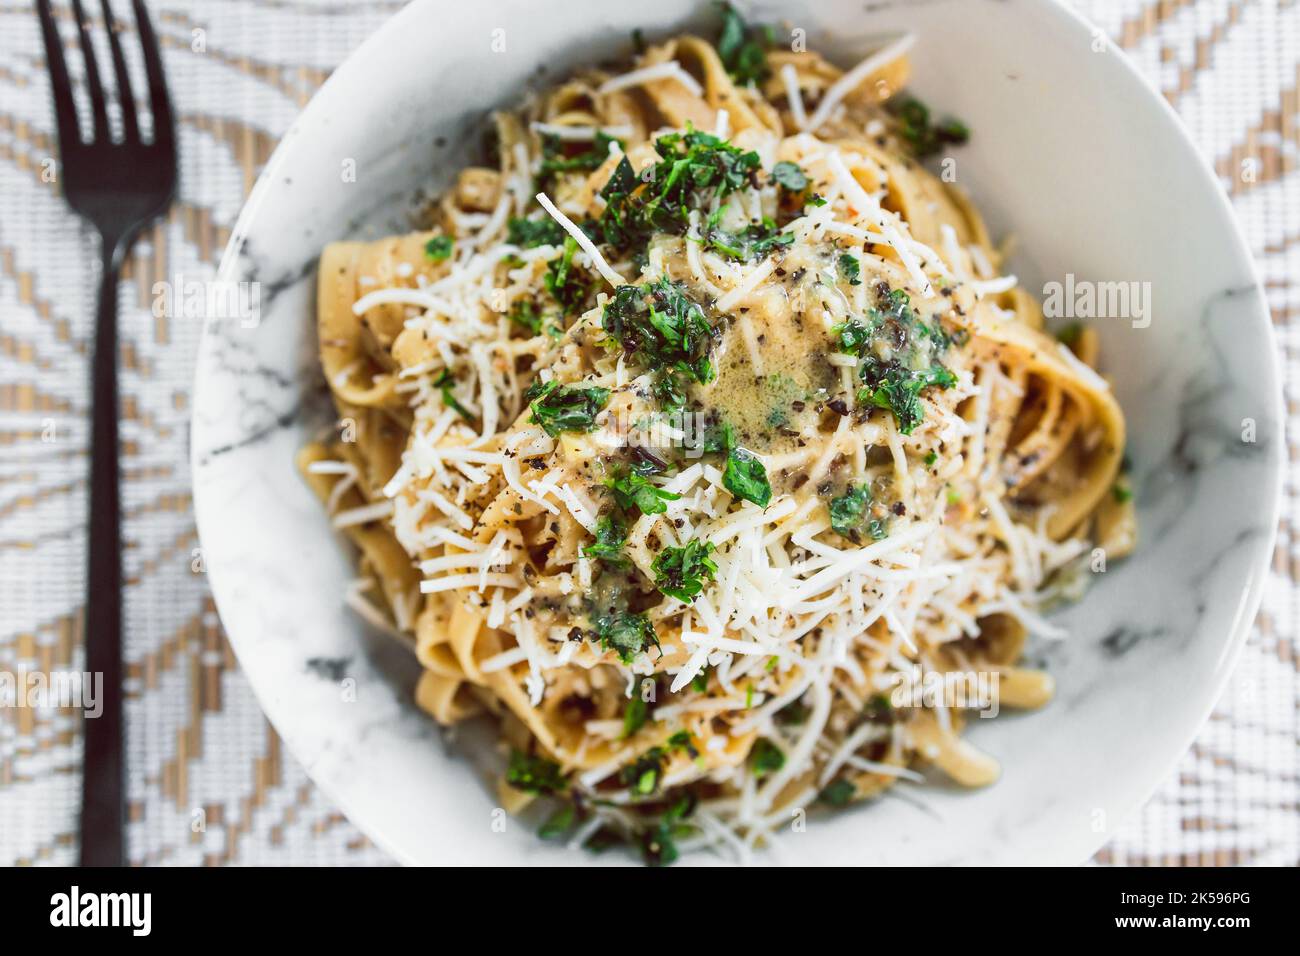 Fettuccini-Pasta auf pflanzlicher Basis mit cremiger Zitronen- und Petersiliensauce, gekrönt mit frischen Kräutern und milchfreiem Käse, gesunden veganen Rezepten Stockfoto